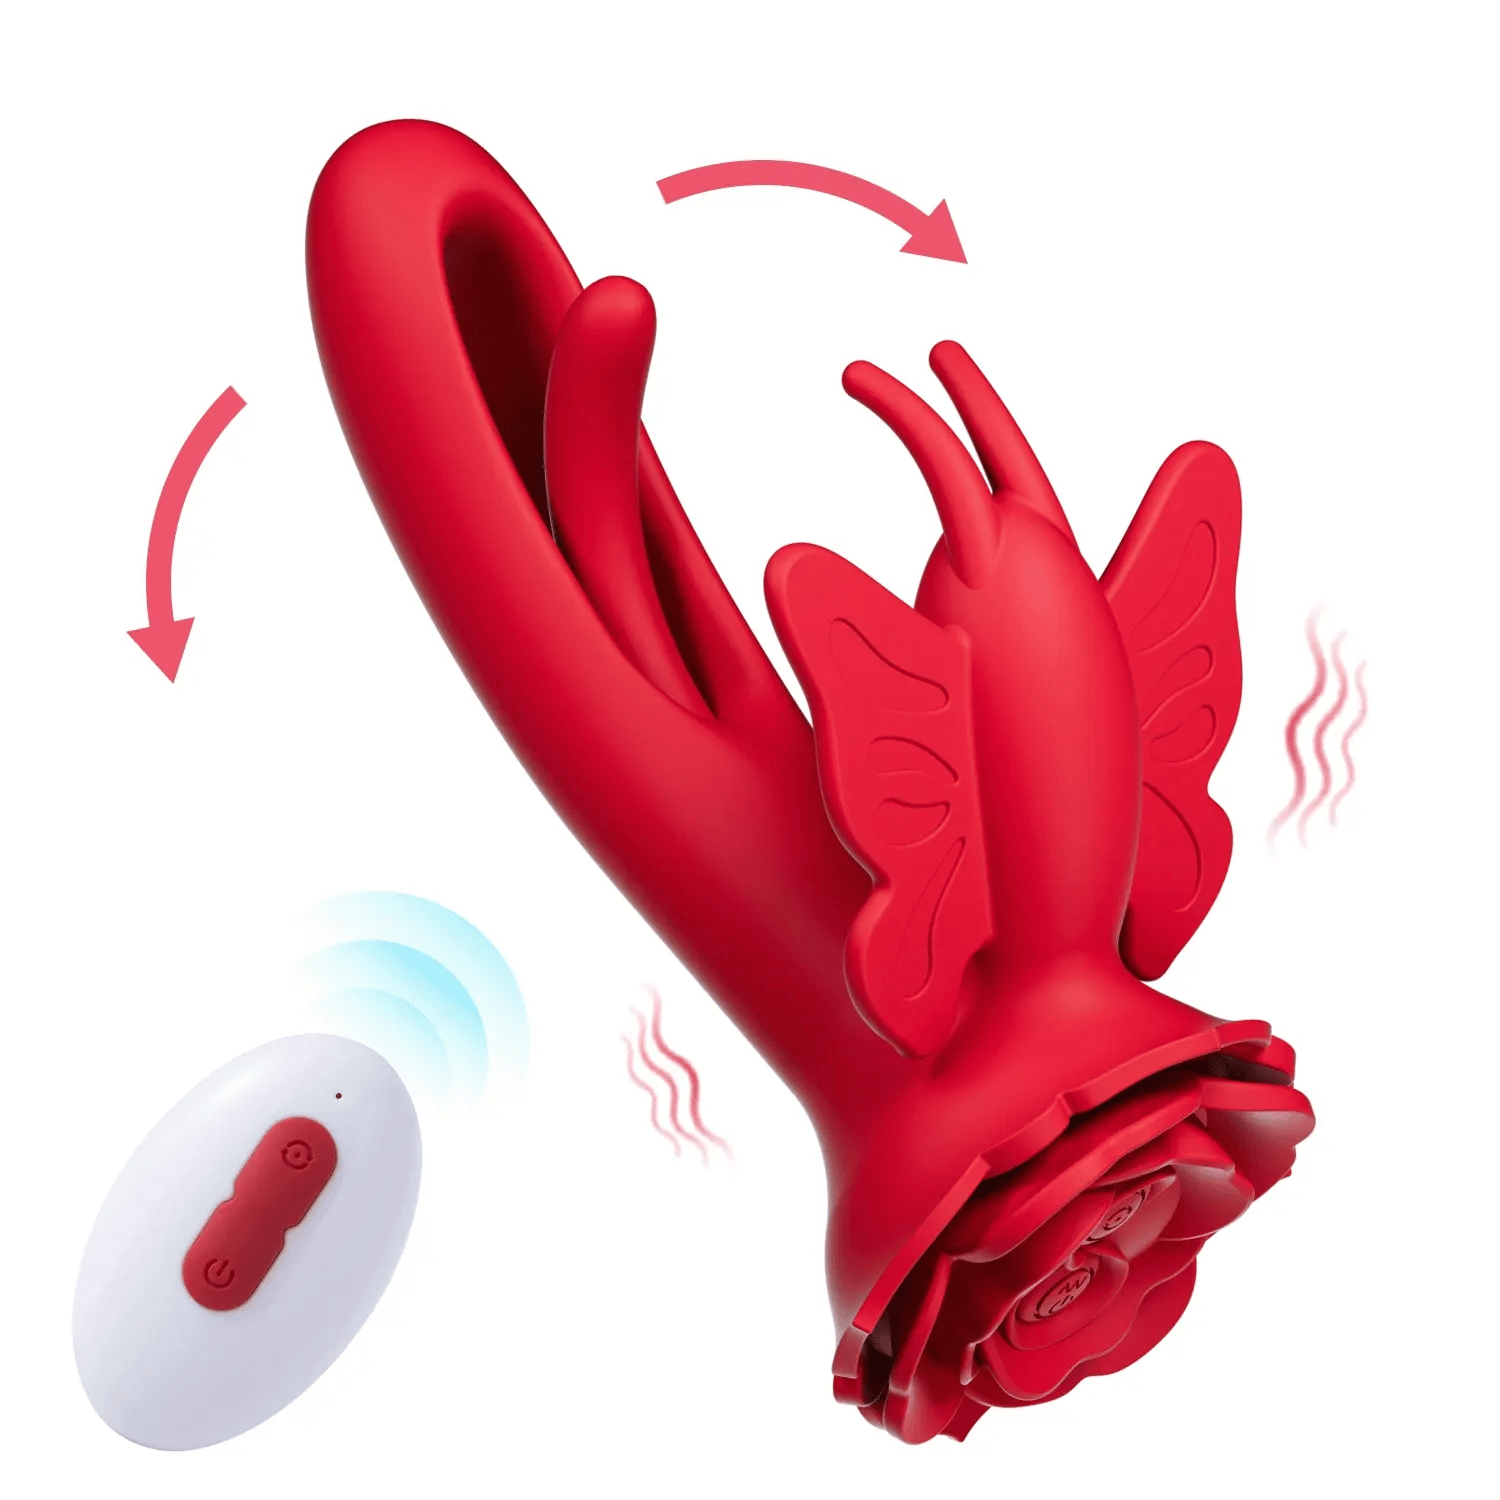 Skylar – Klitoris-saugender G-Punkt-Klopfvibrator